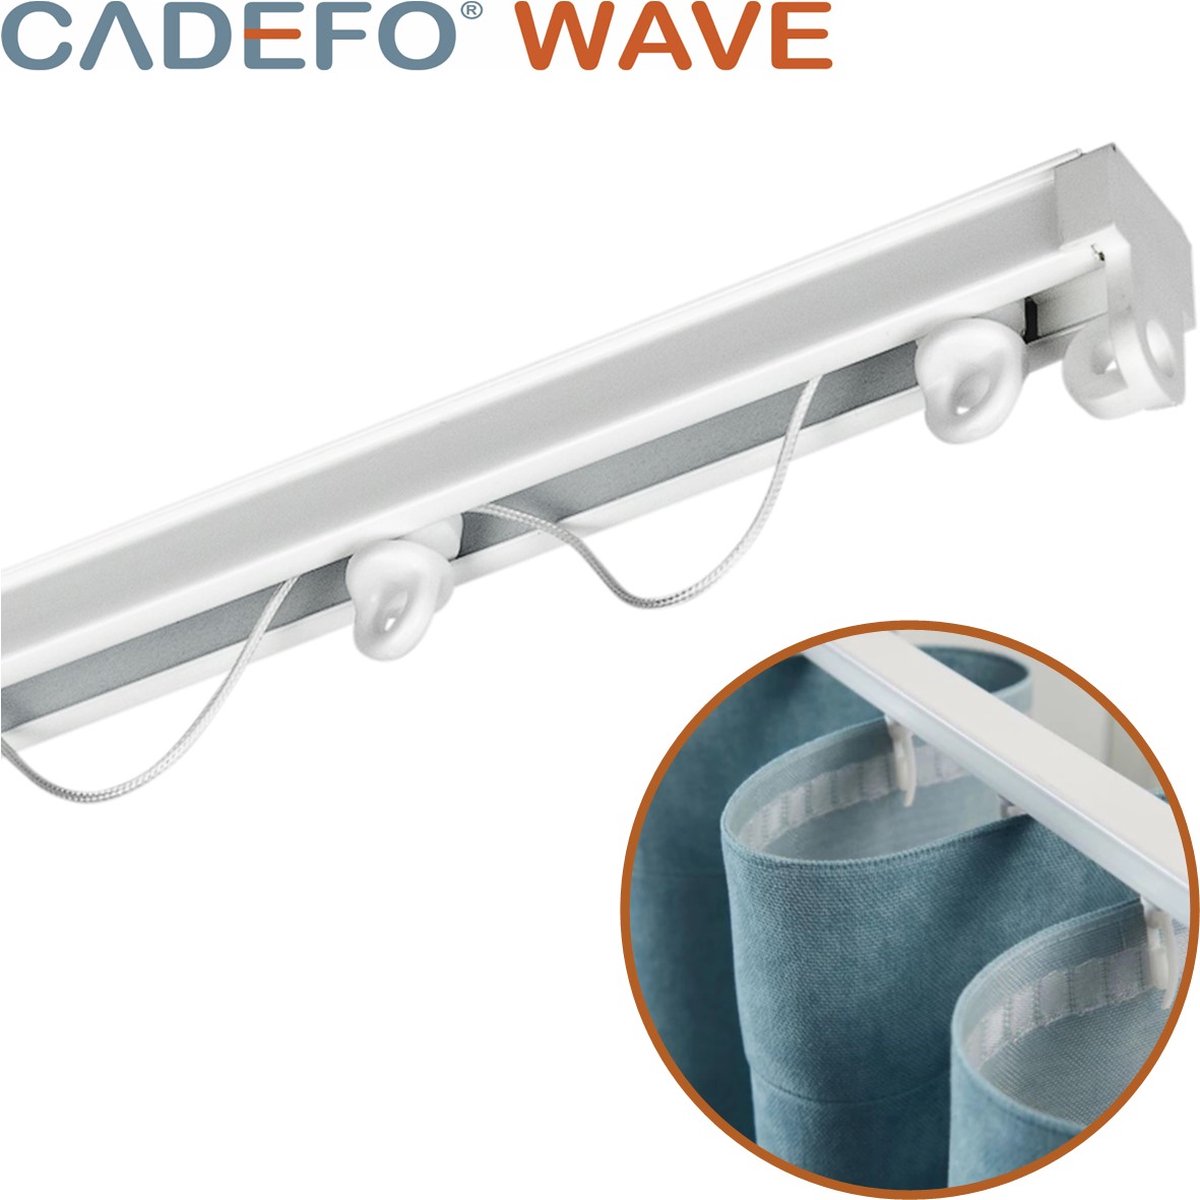 CADEFO WAVE (351 - 400 cm) Gordijnrails - Compleet op maat! - UIT 1 STUK - Leverbaar tot 6 meter - Plafondbevestiging - Lengte 359 cm